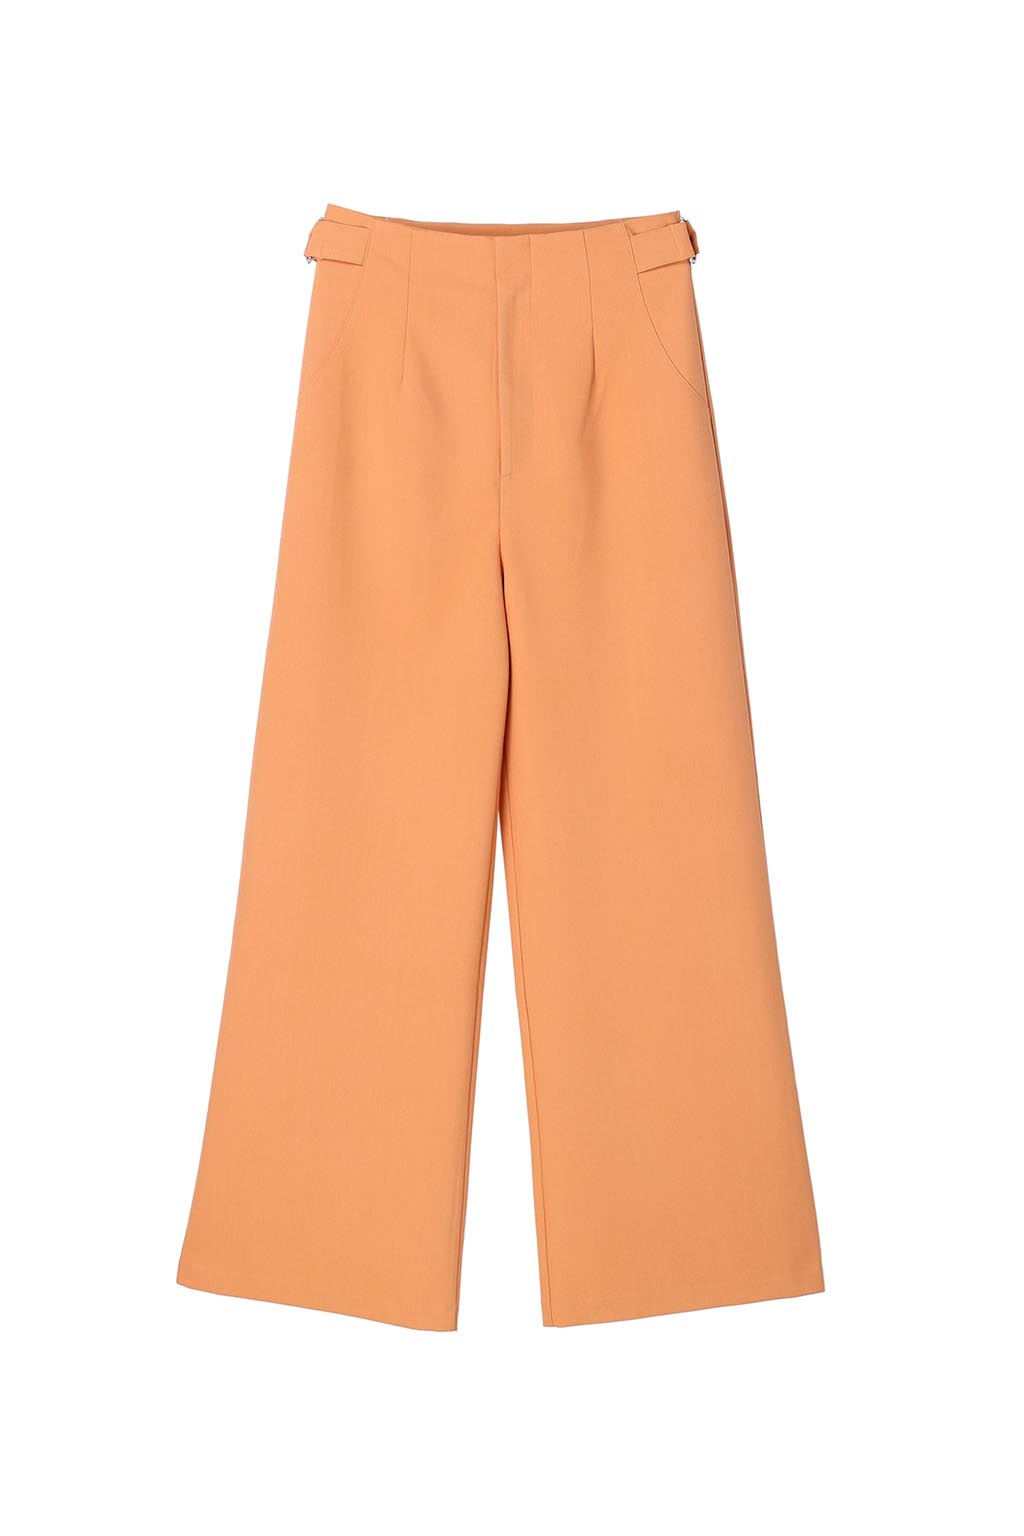 Waist Belted Color Pants Orange 2